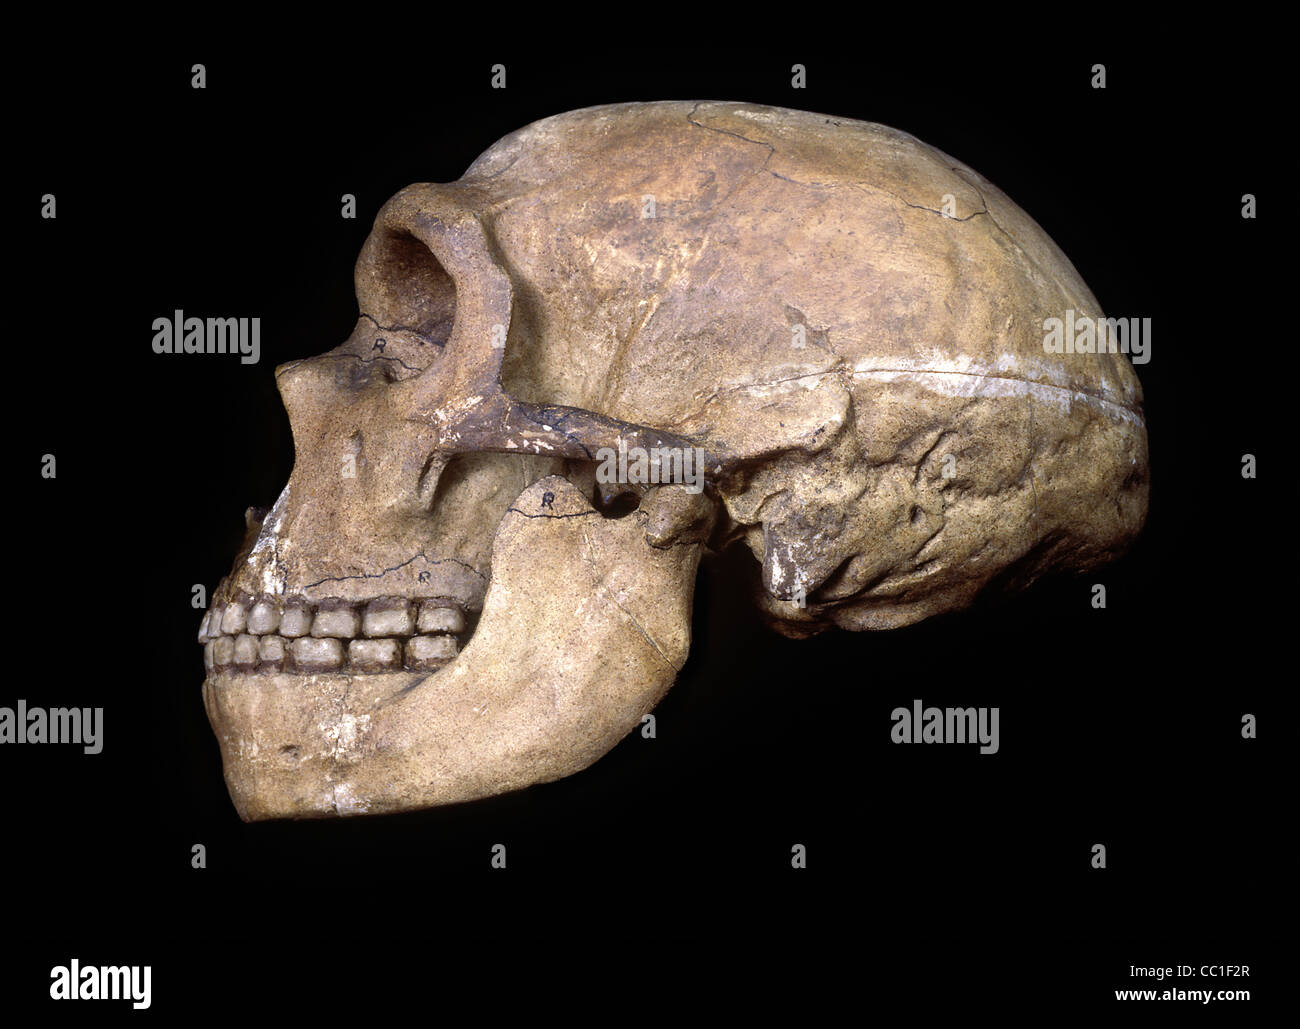 Image result for prehistoric skull side